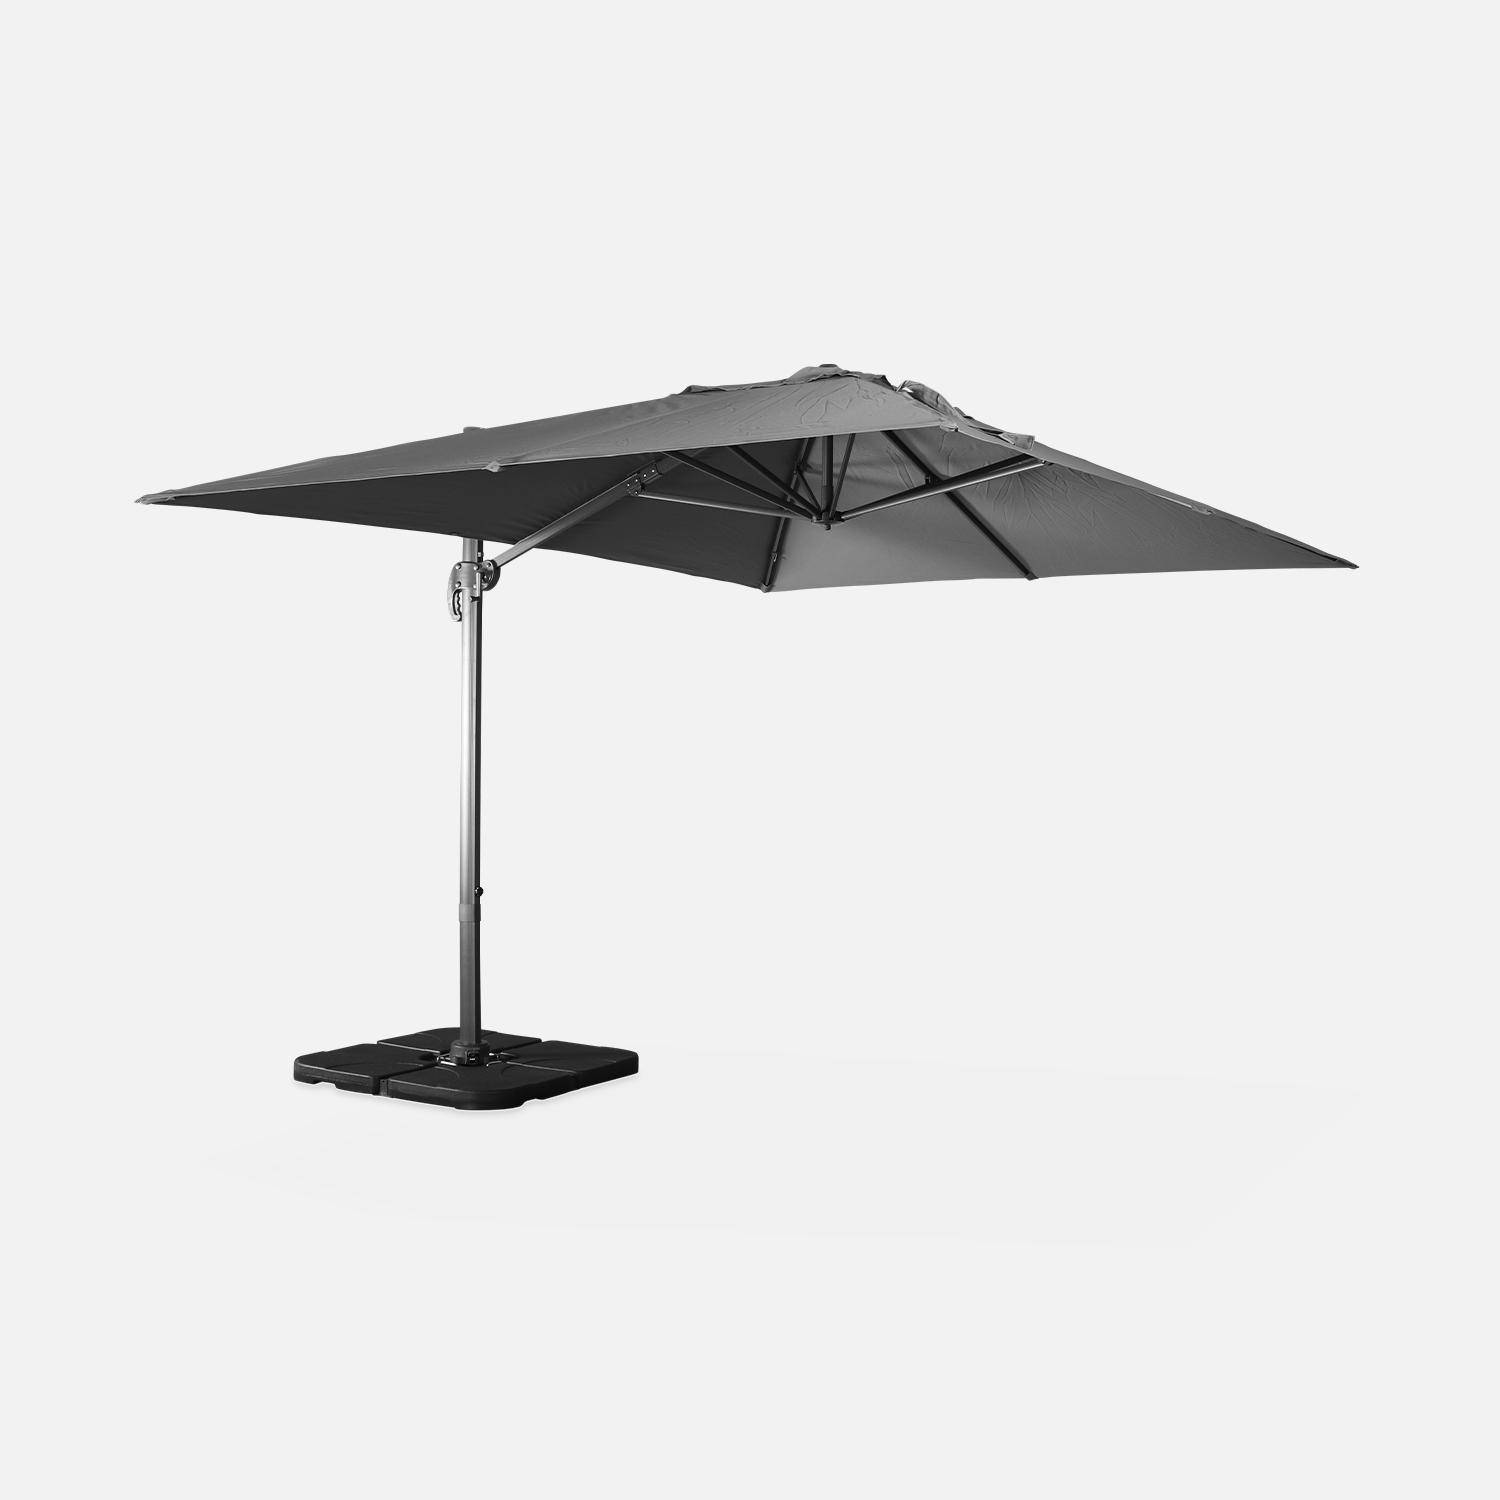 Grijze rechthoekige parasol 3x4m + verzwaarde tegels 50x50cm,sweeek,Photo3